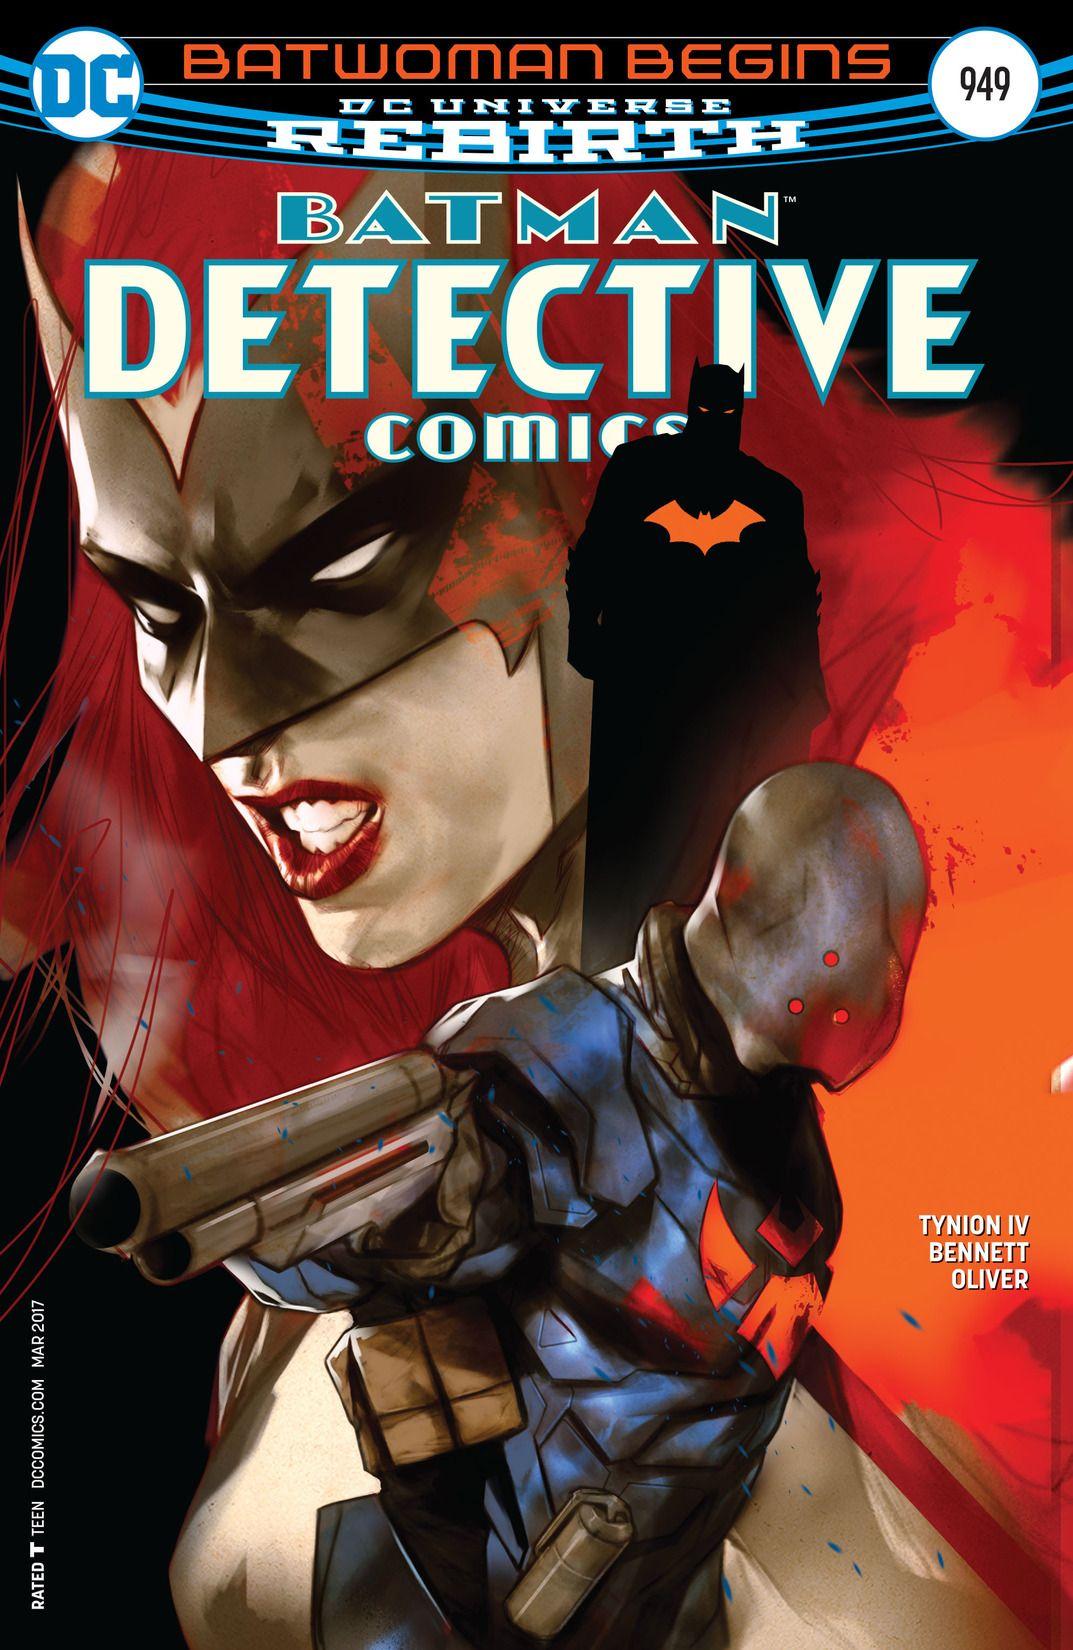 Detective Comics Vol. 1 #949